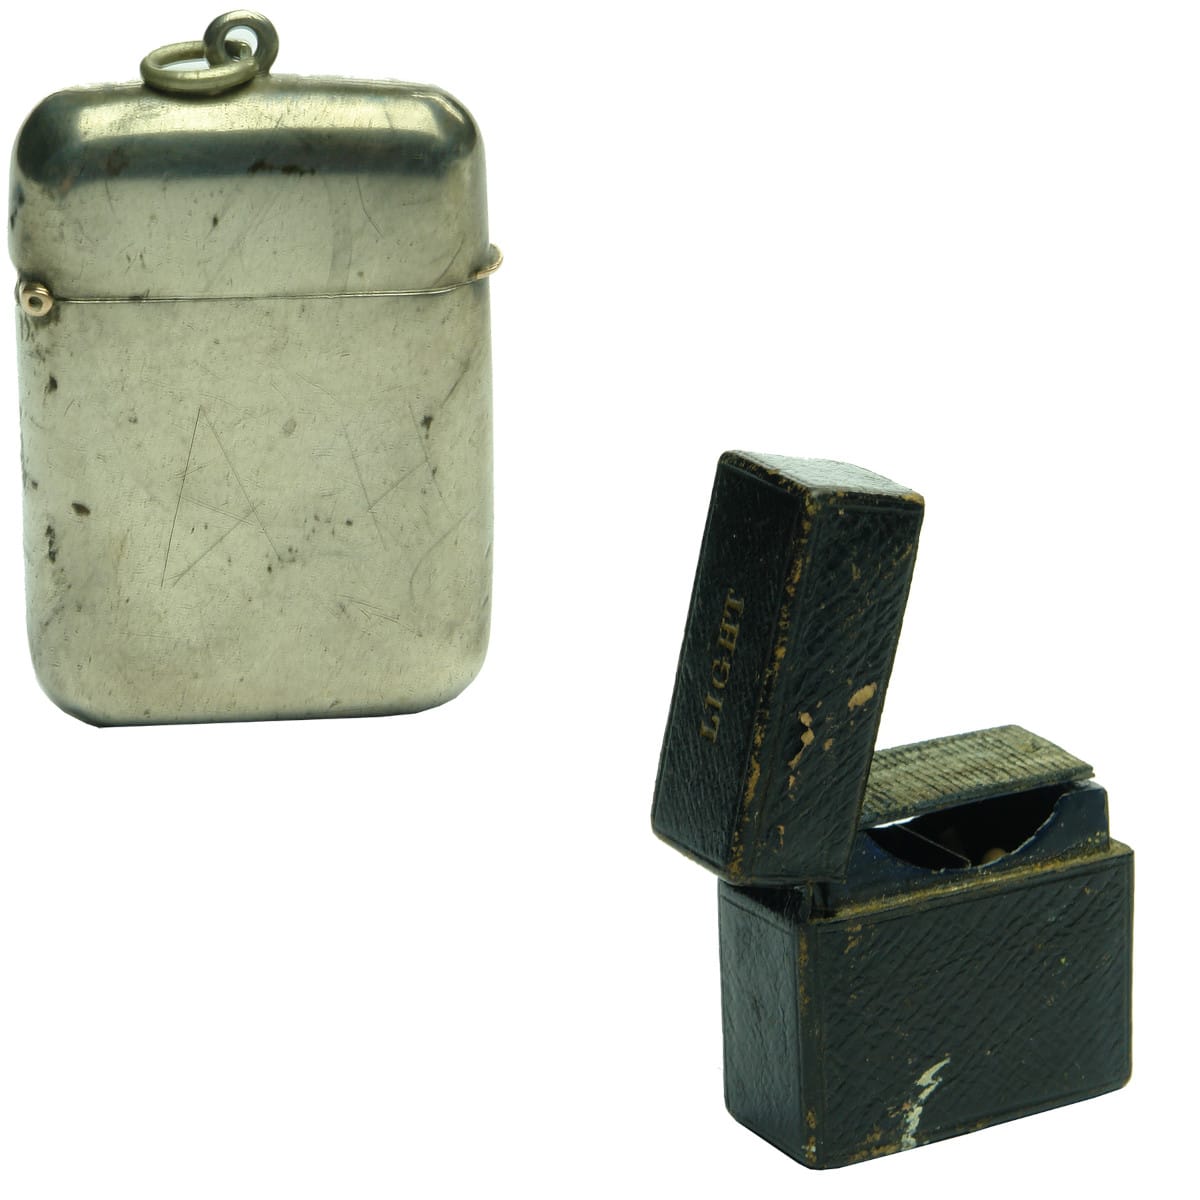 Tobacciana. Silver Vesta Case and a Leather Bound Vesta Case.